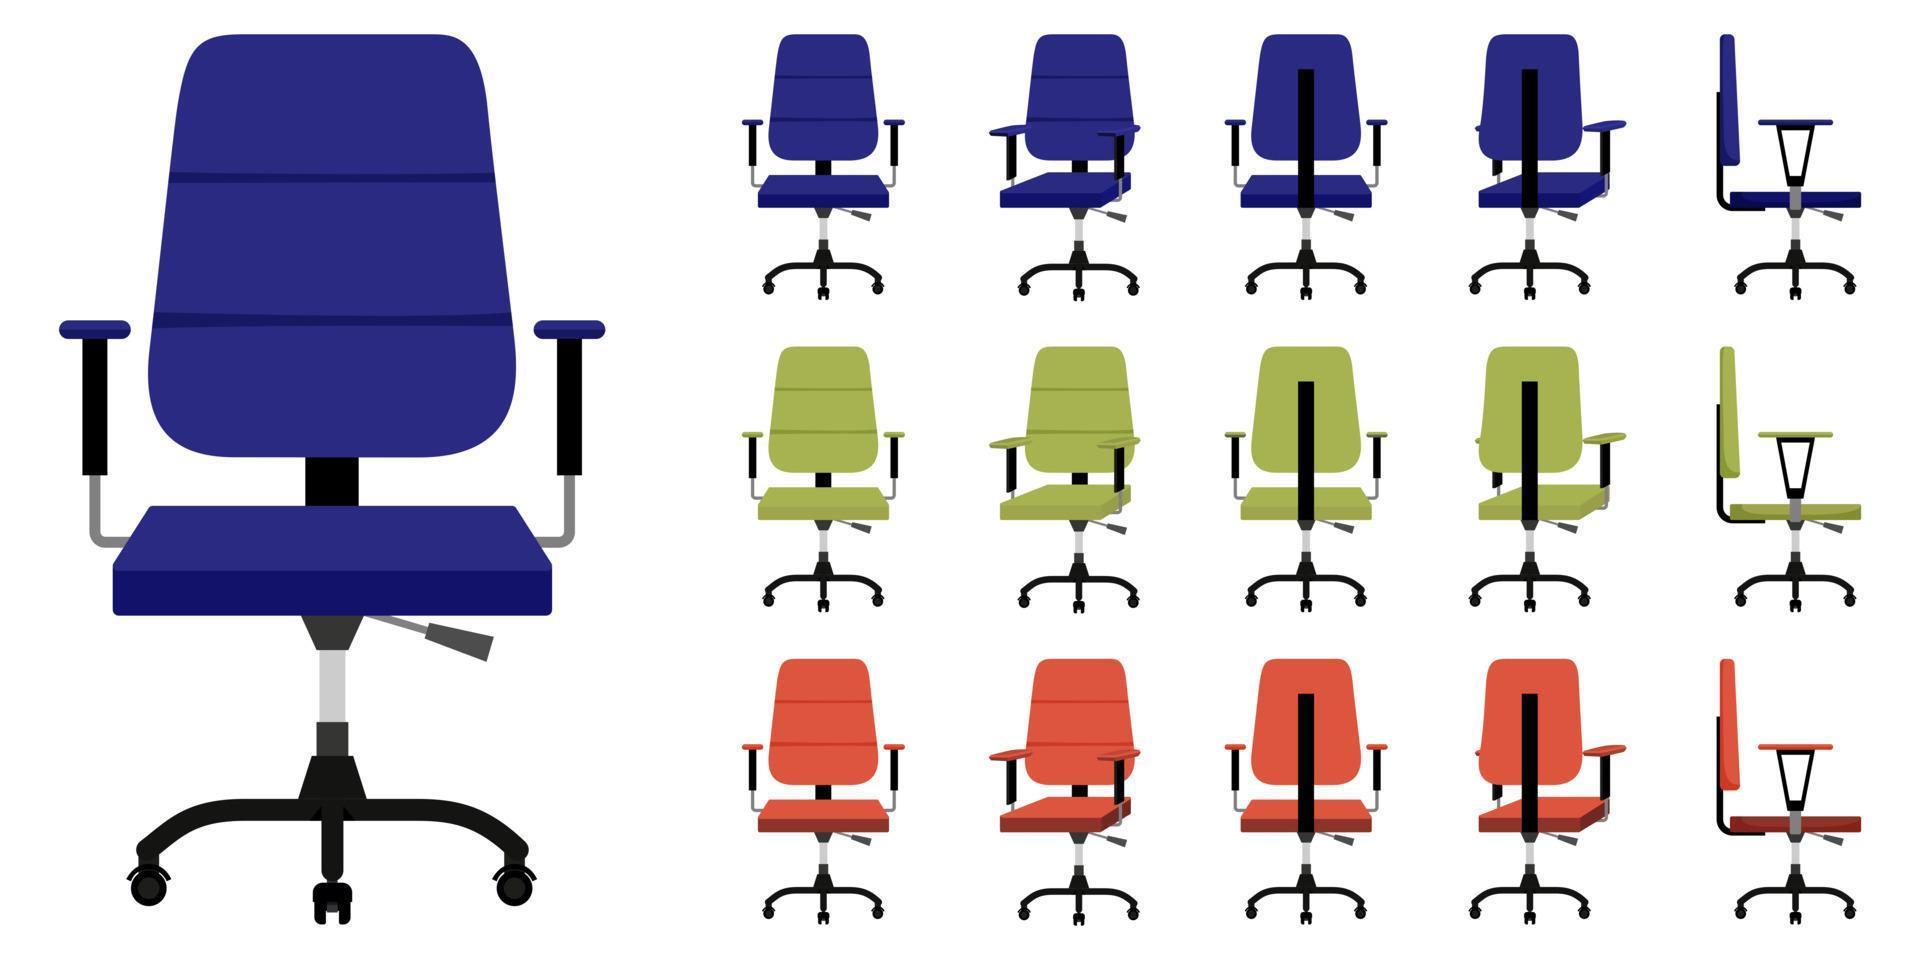 lindo y hermoso sillón de oficina para el hogar y la oficina con diferentes posiciones y colores vector